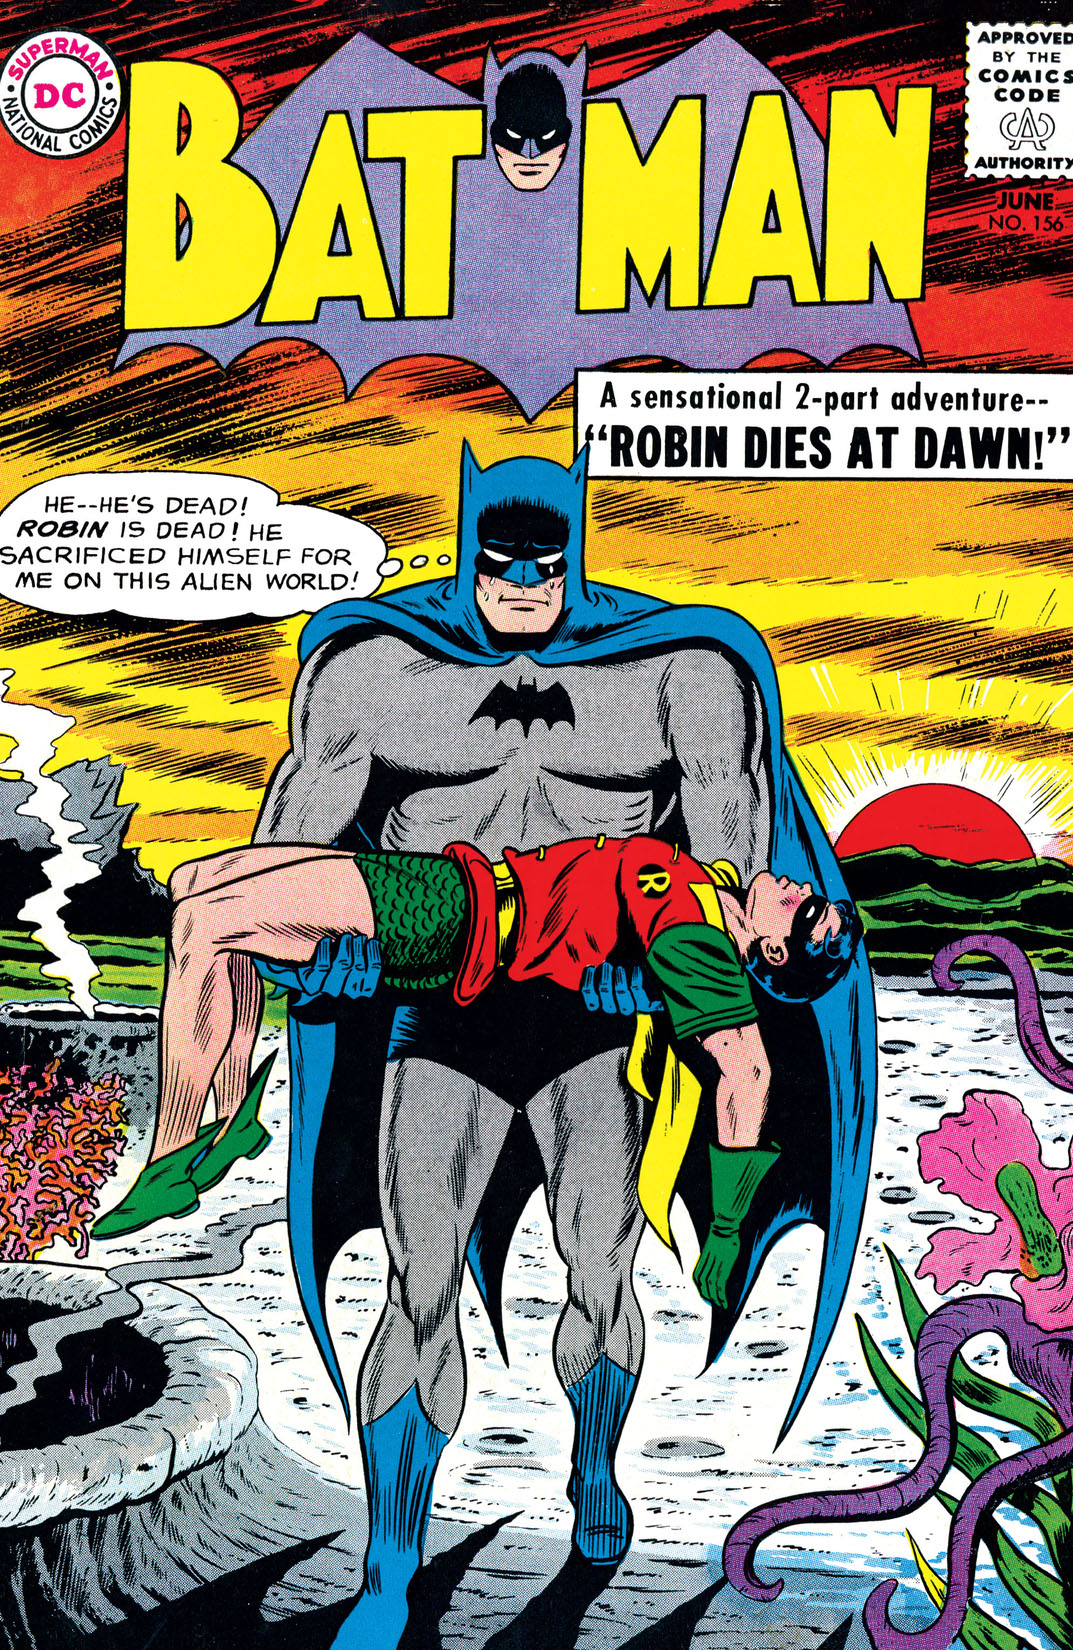 Batman (1940-) #156 preview images